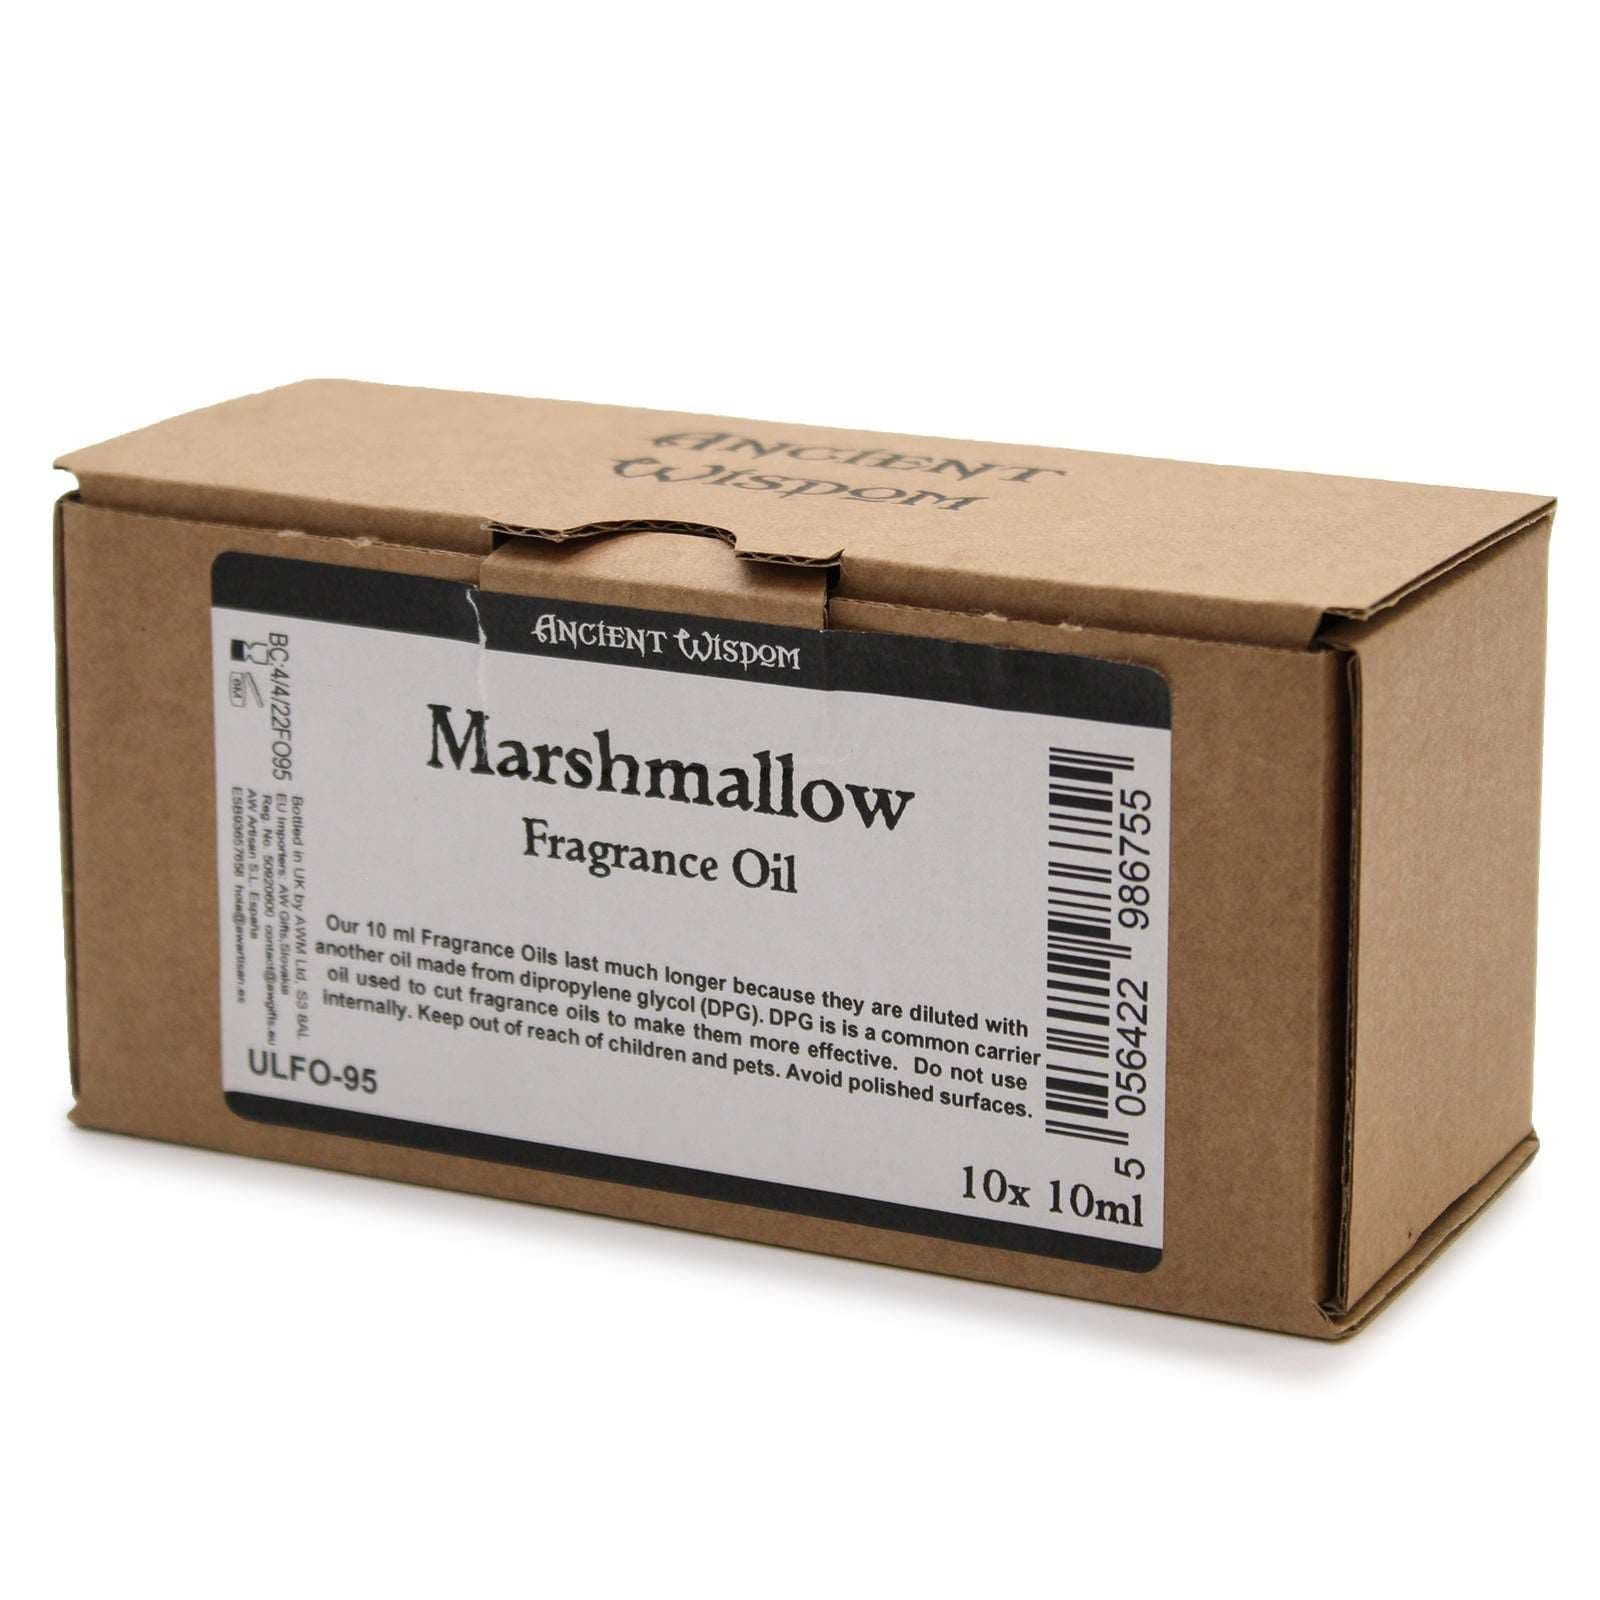 10ml Marshmallow Fragrance Oil 10ml - - best price from Maltashopper.com ULFO-95